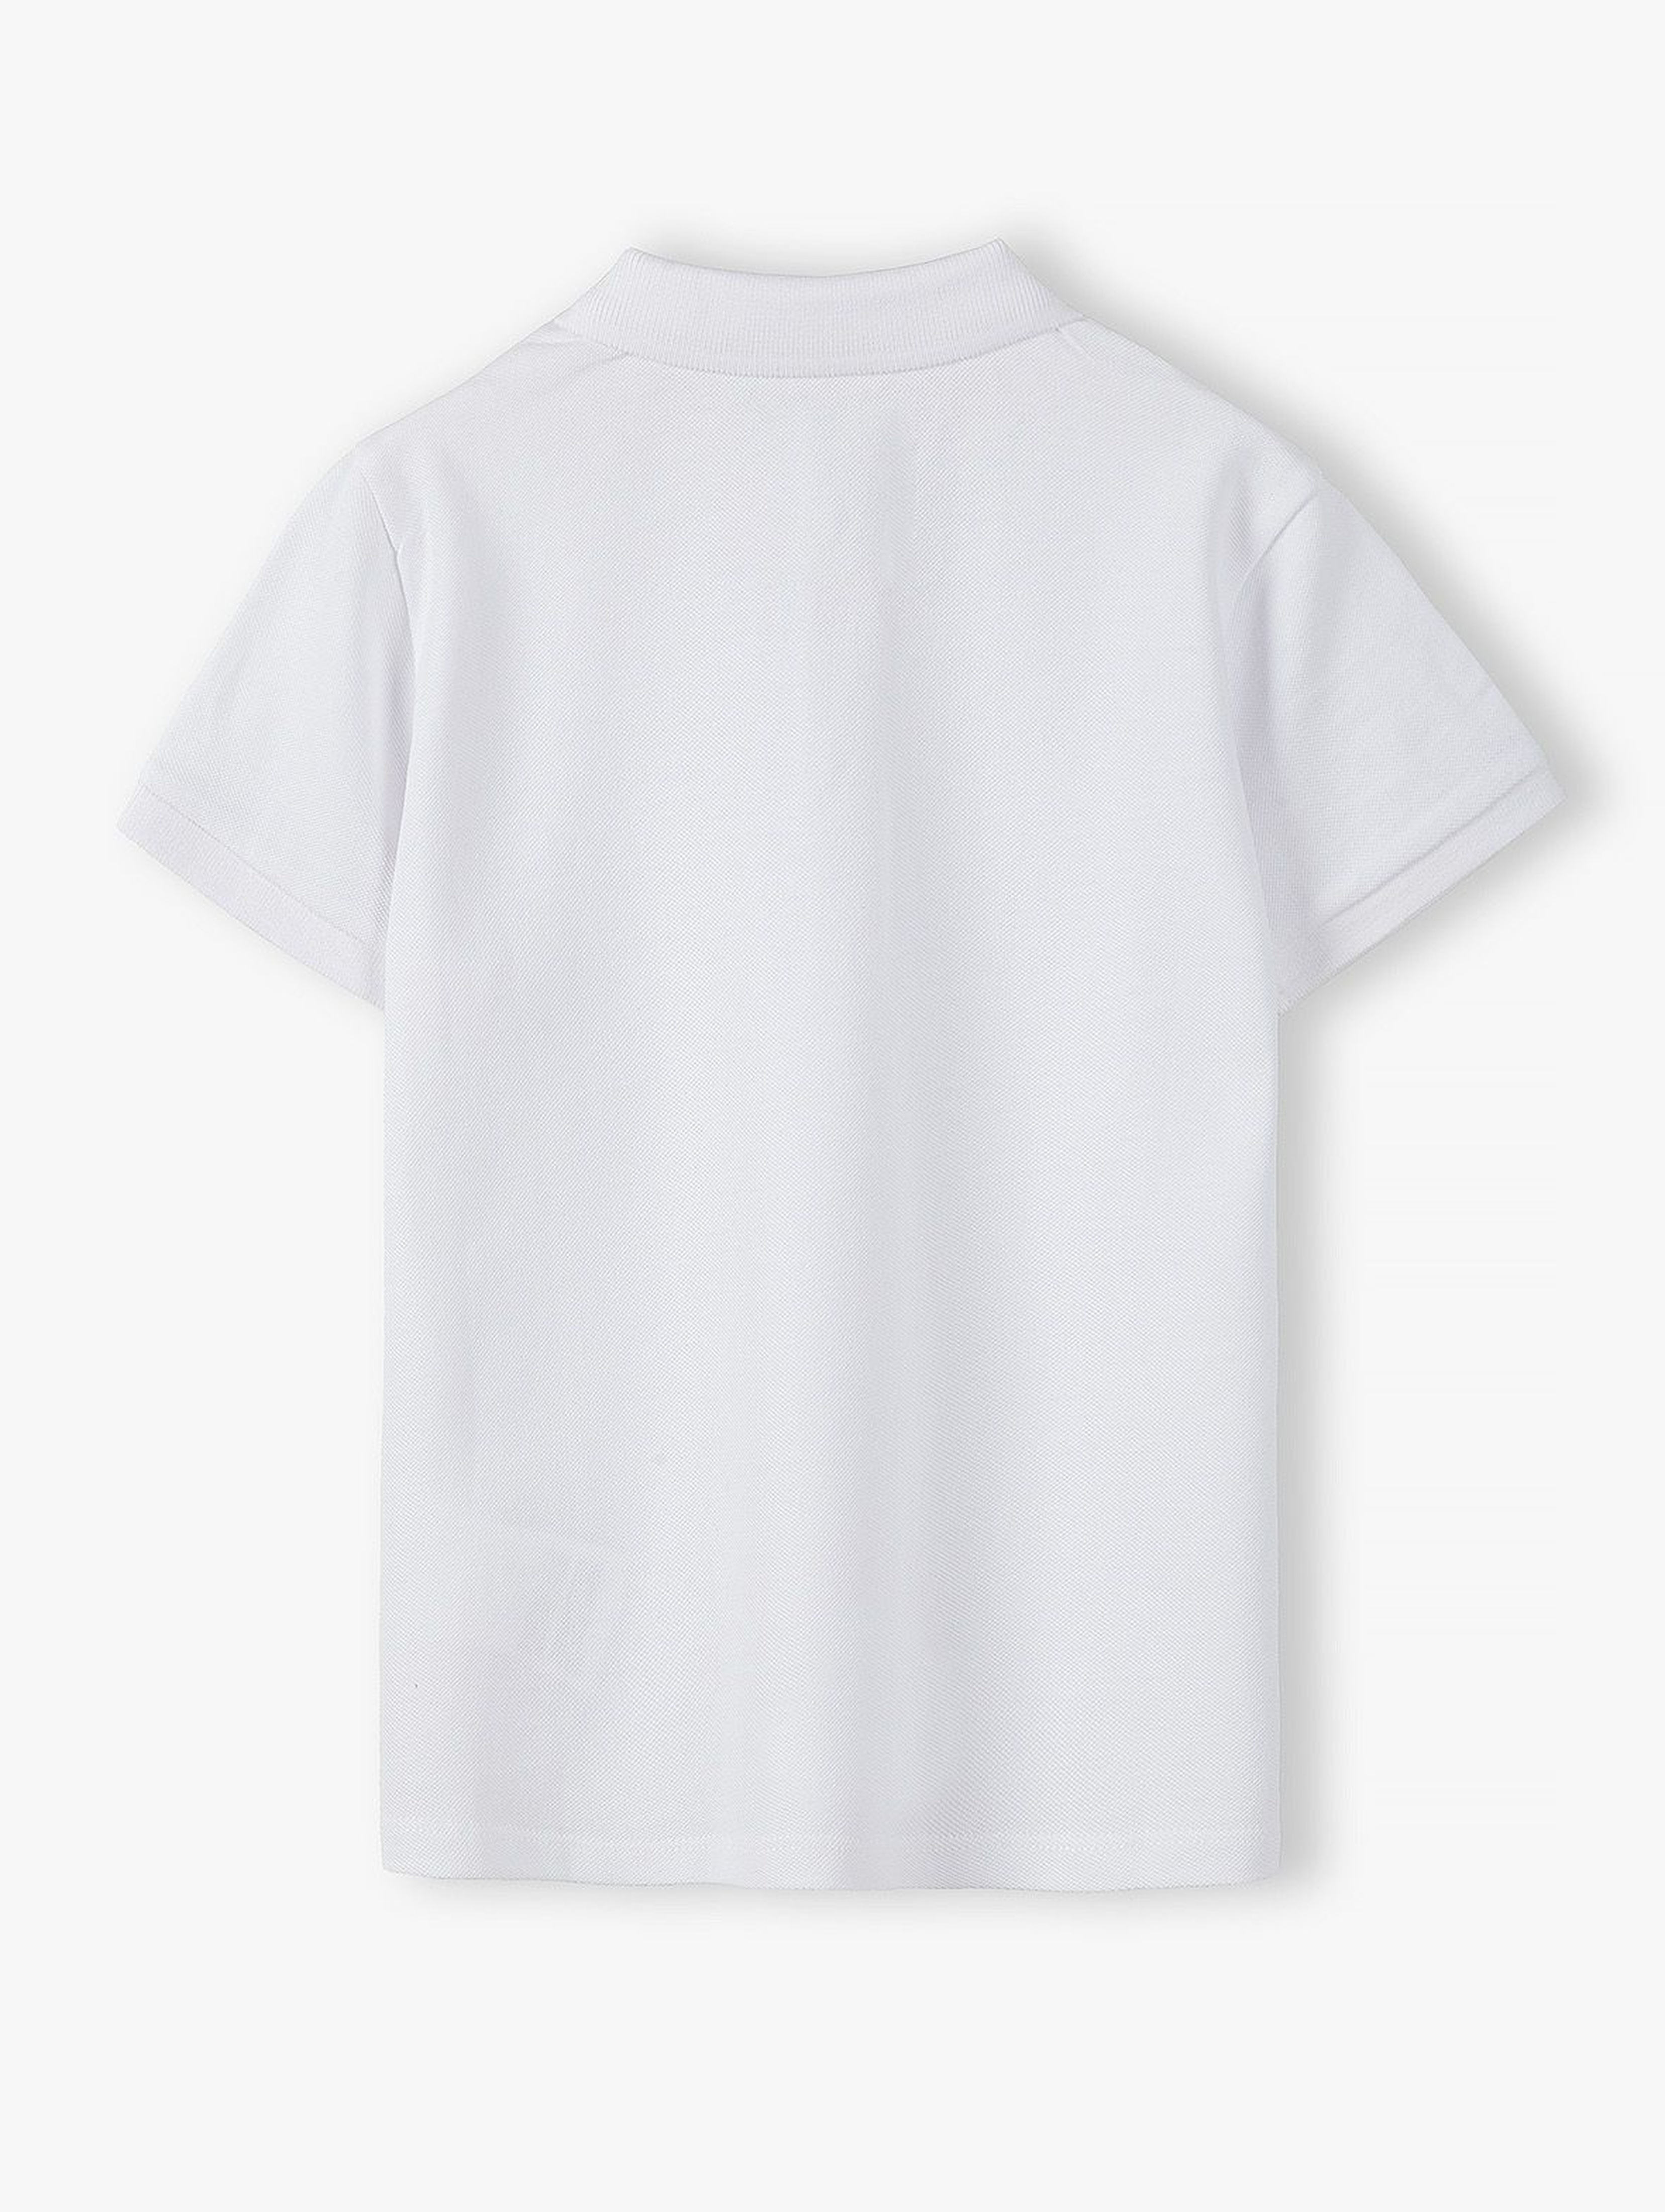 Bawełniany t-shirt chłopięcy w kolorze białym z kołnierzykiem